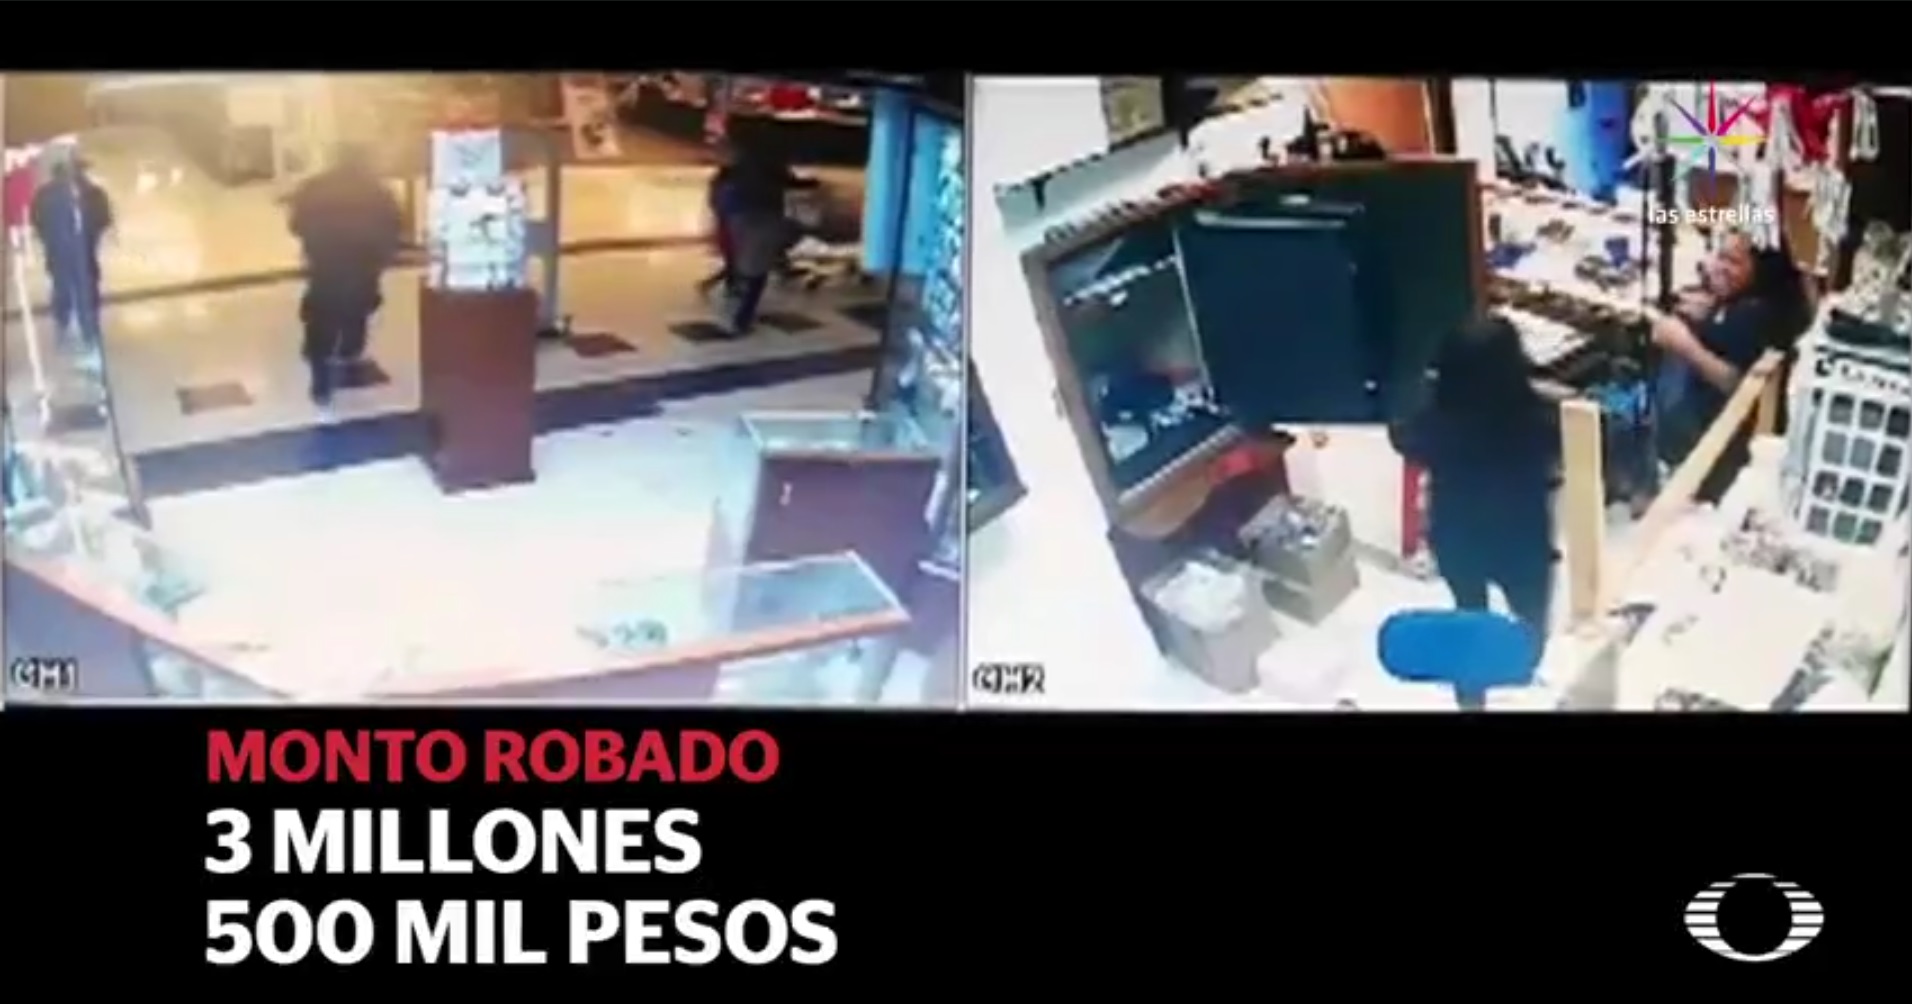 Noticieros Televisa obtuvo las imágenes del asalto a la joyería. (Noticieros Televisa)